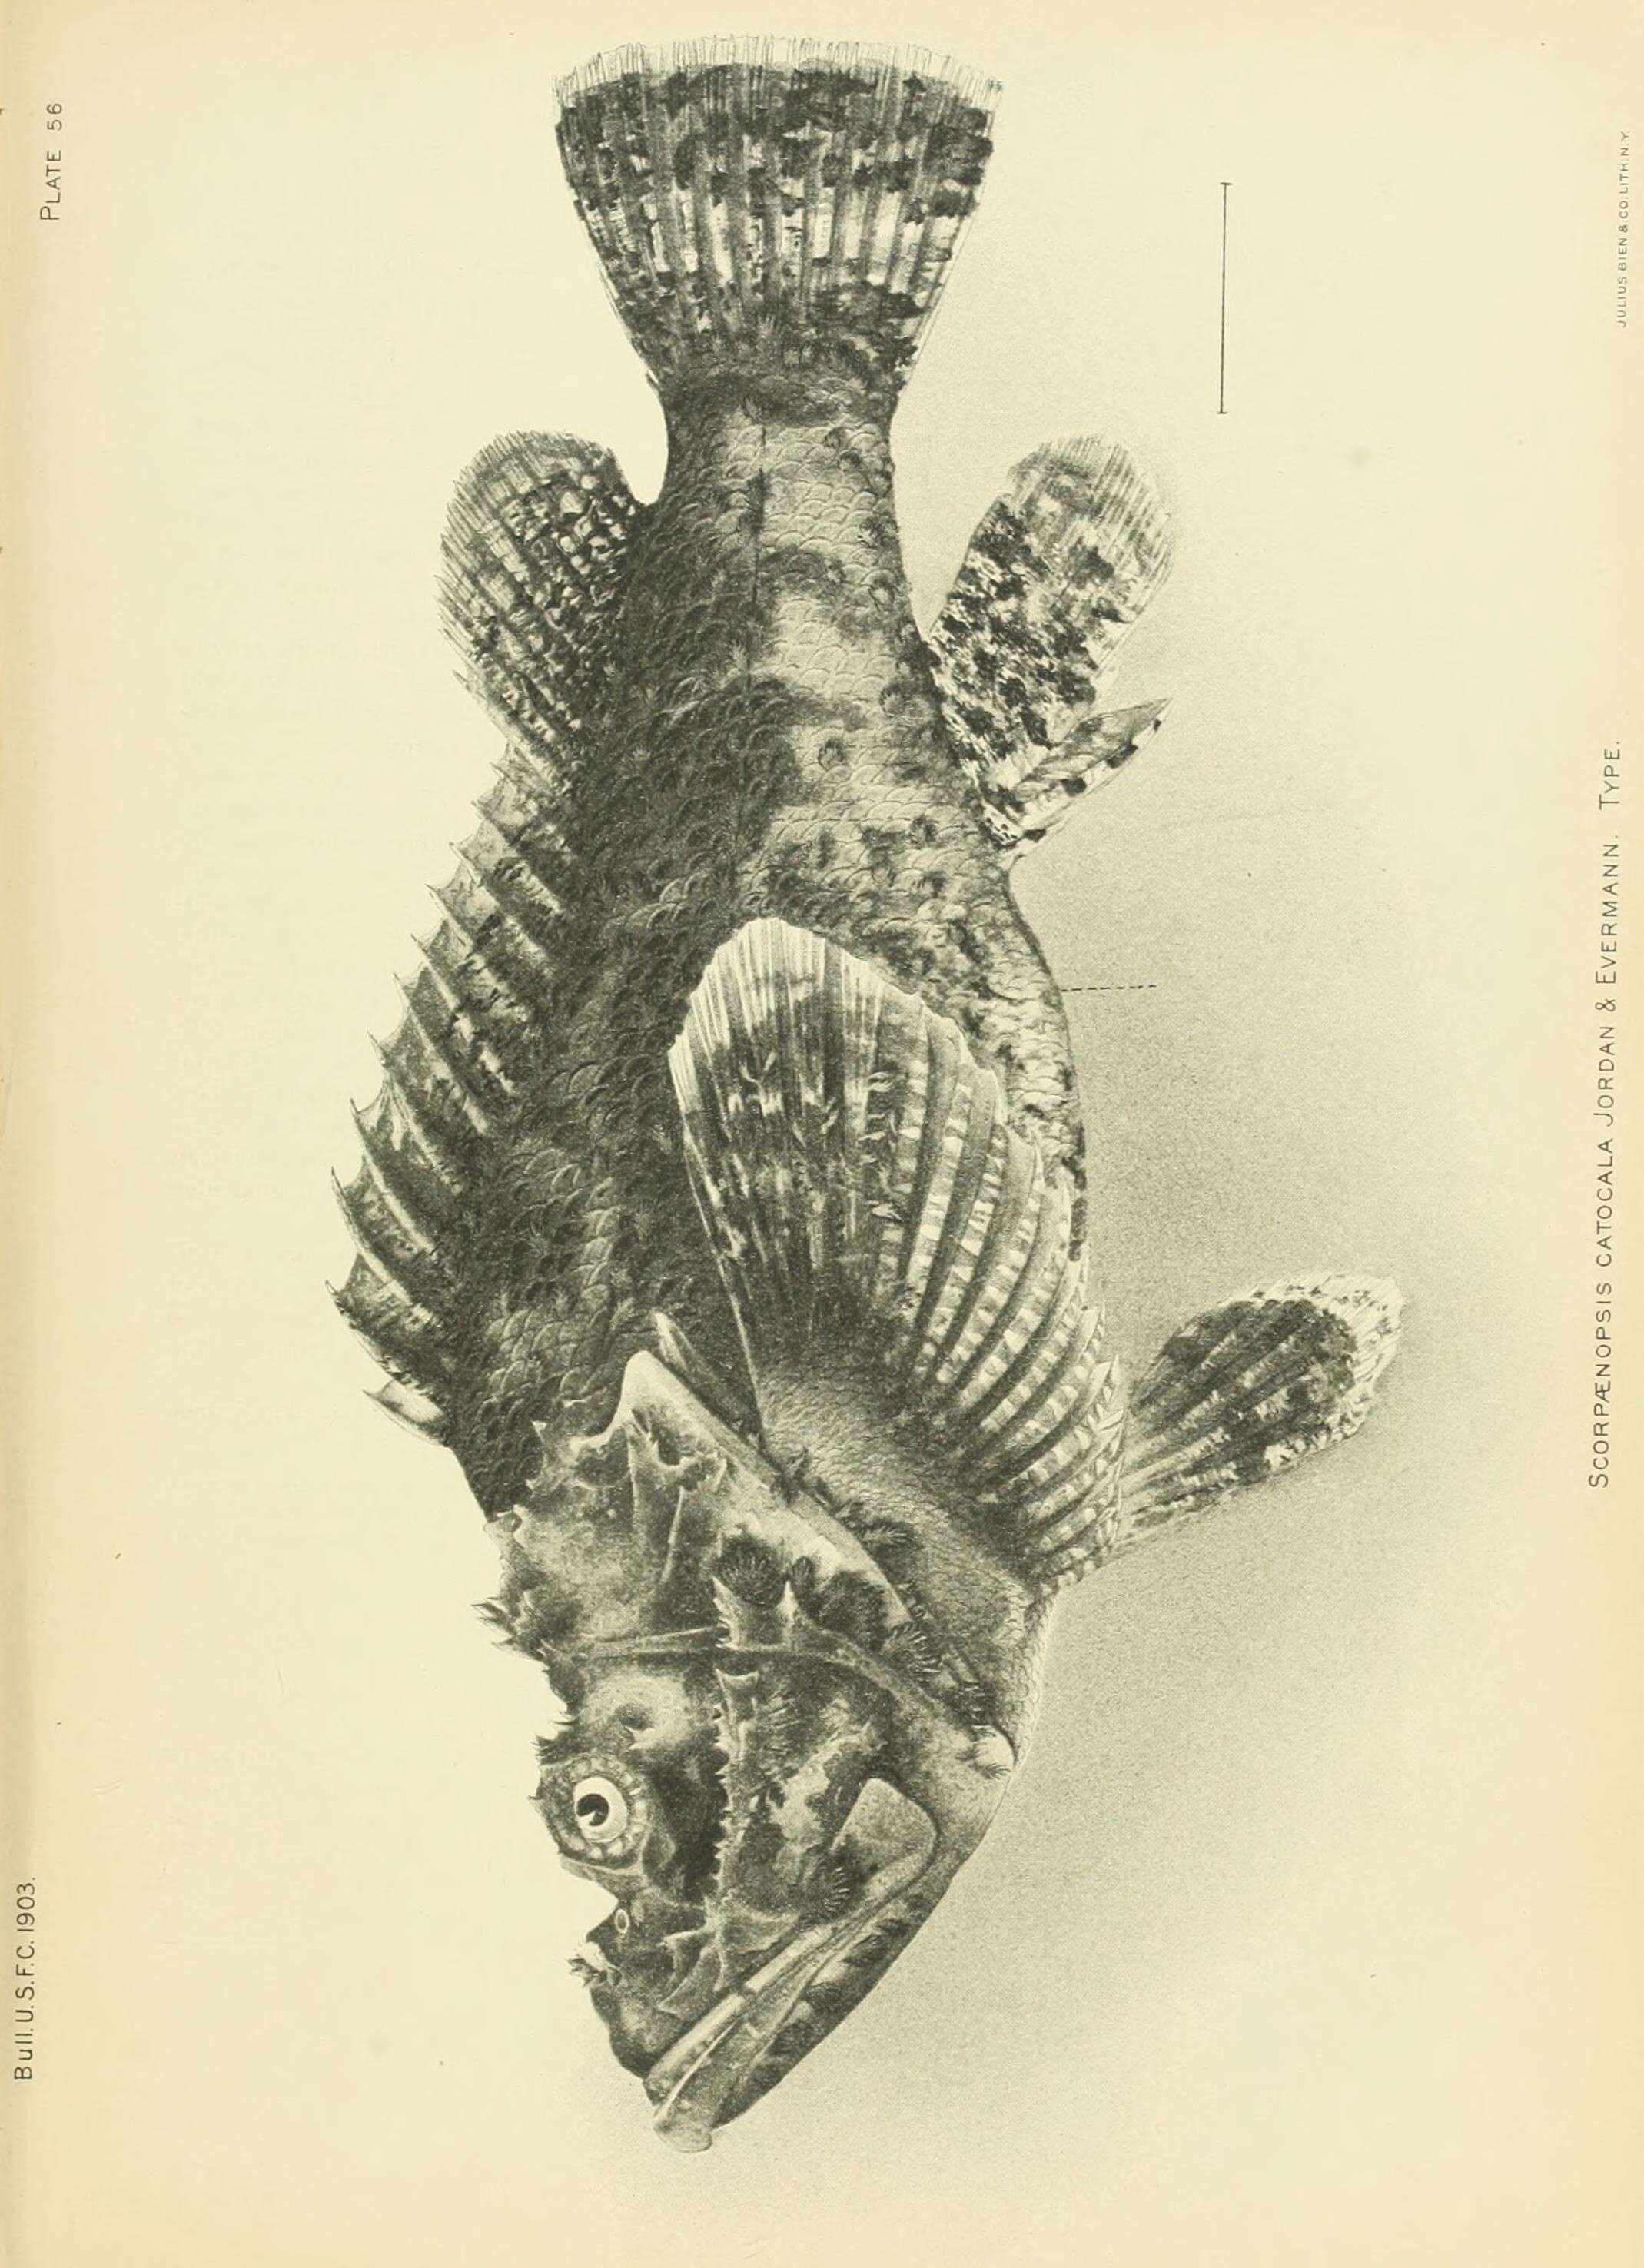 Sivun Scorpaenopsis diabolus (Cuvier 1829) kuva